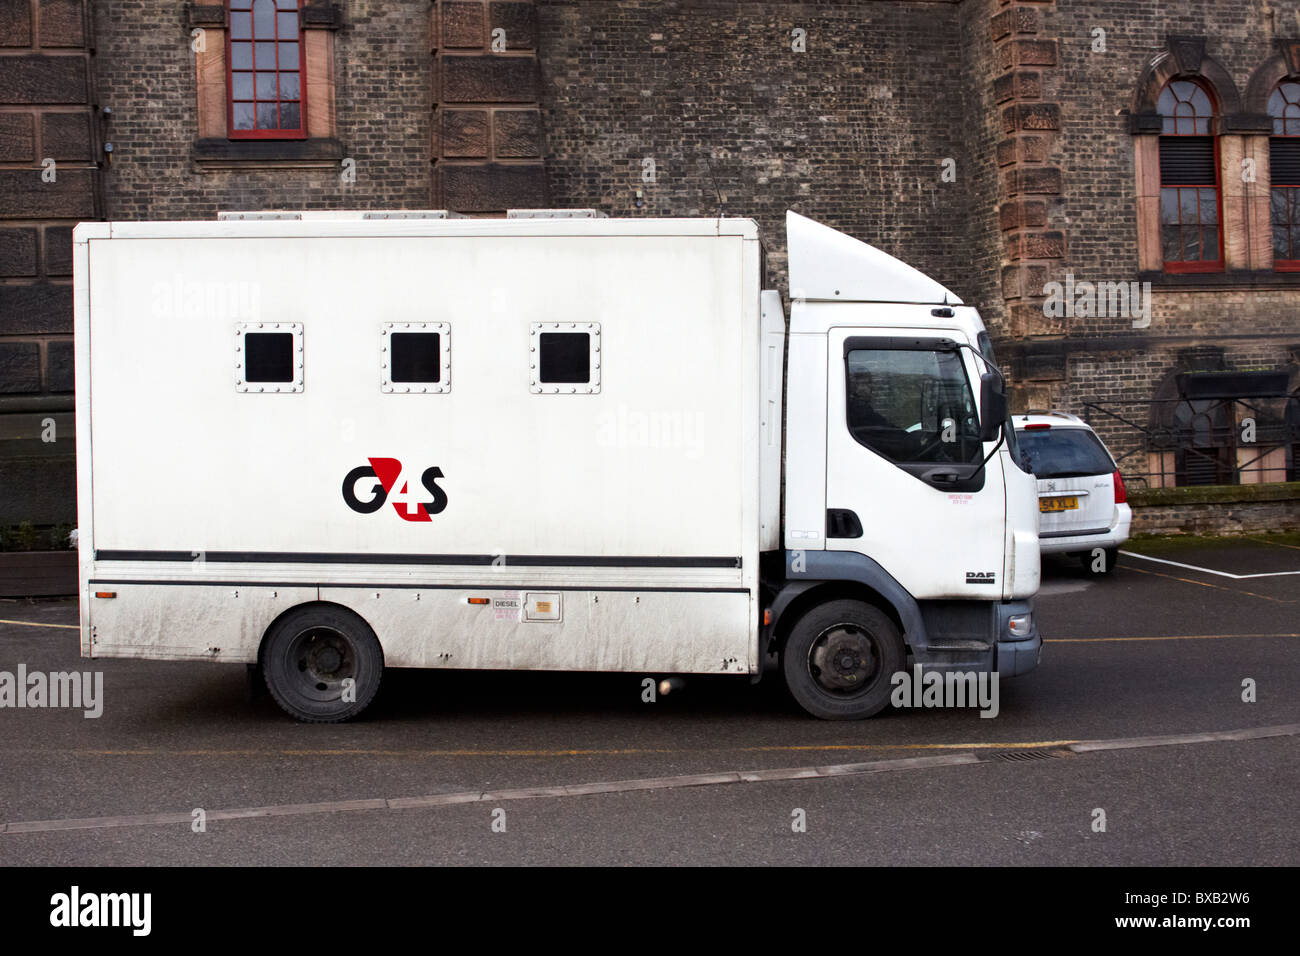 used prison vans for sale uk